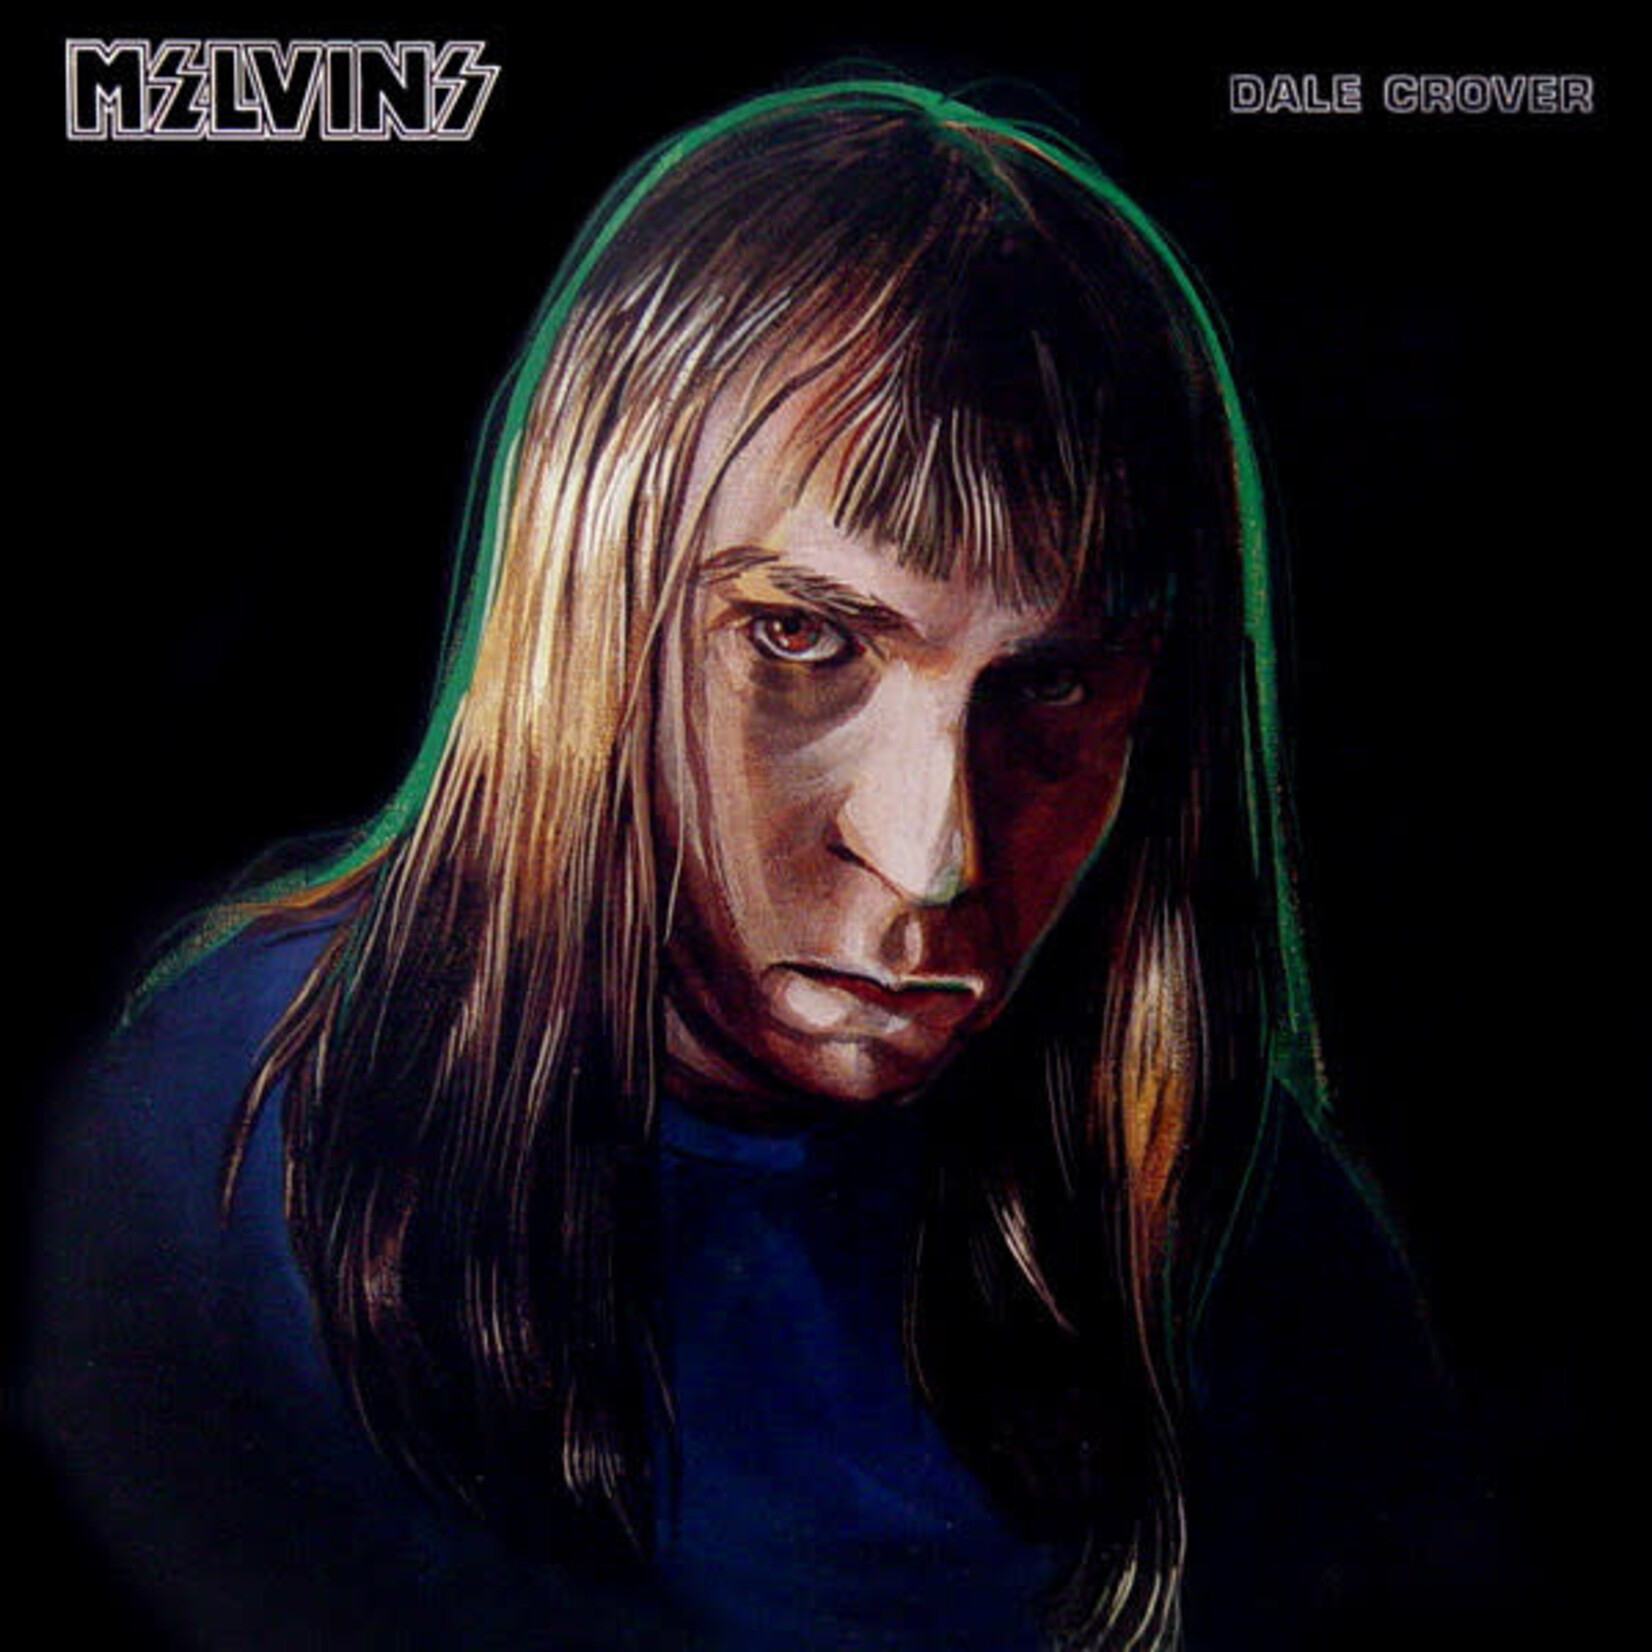 Melvins – Dale Crover (VG, 12" Boner Records – BR33-1, 1992)